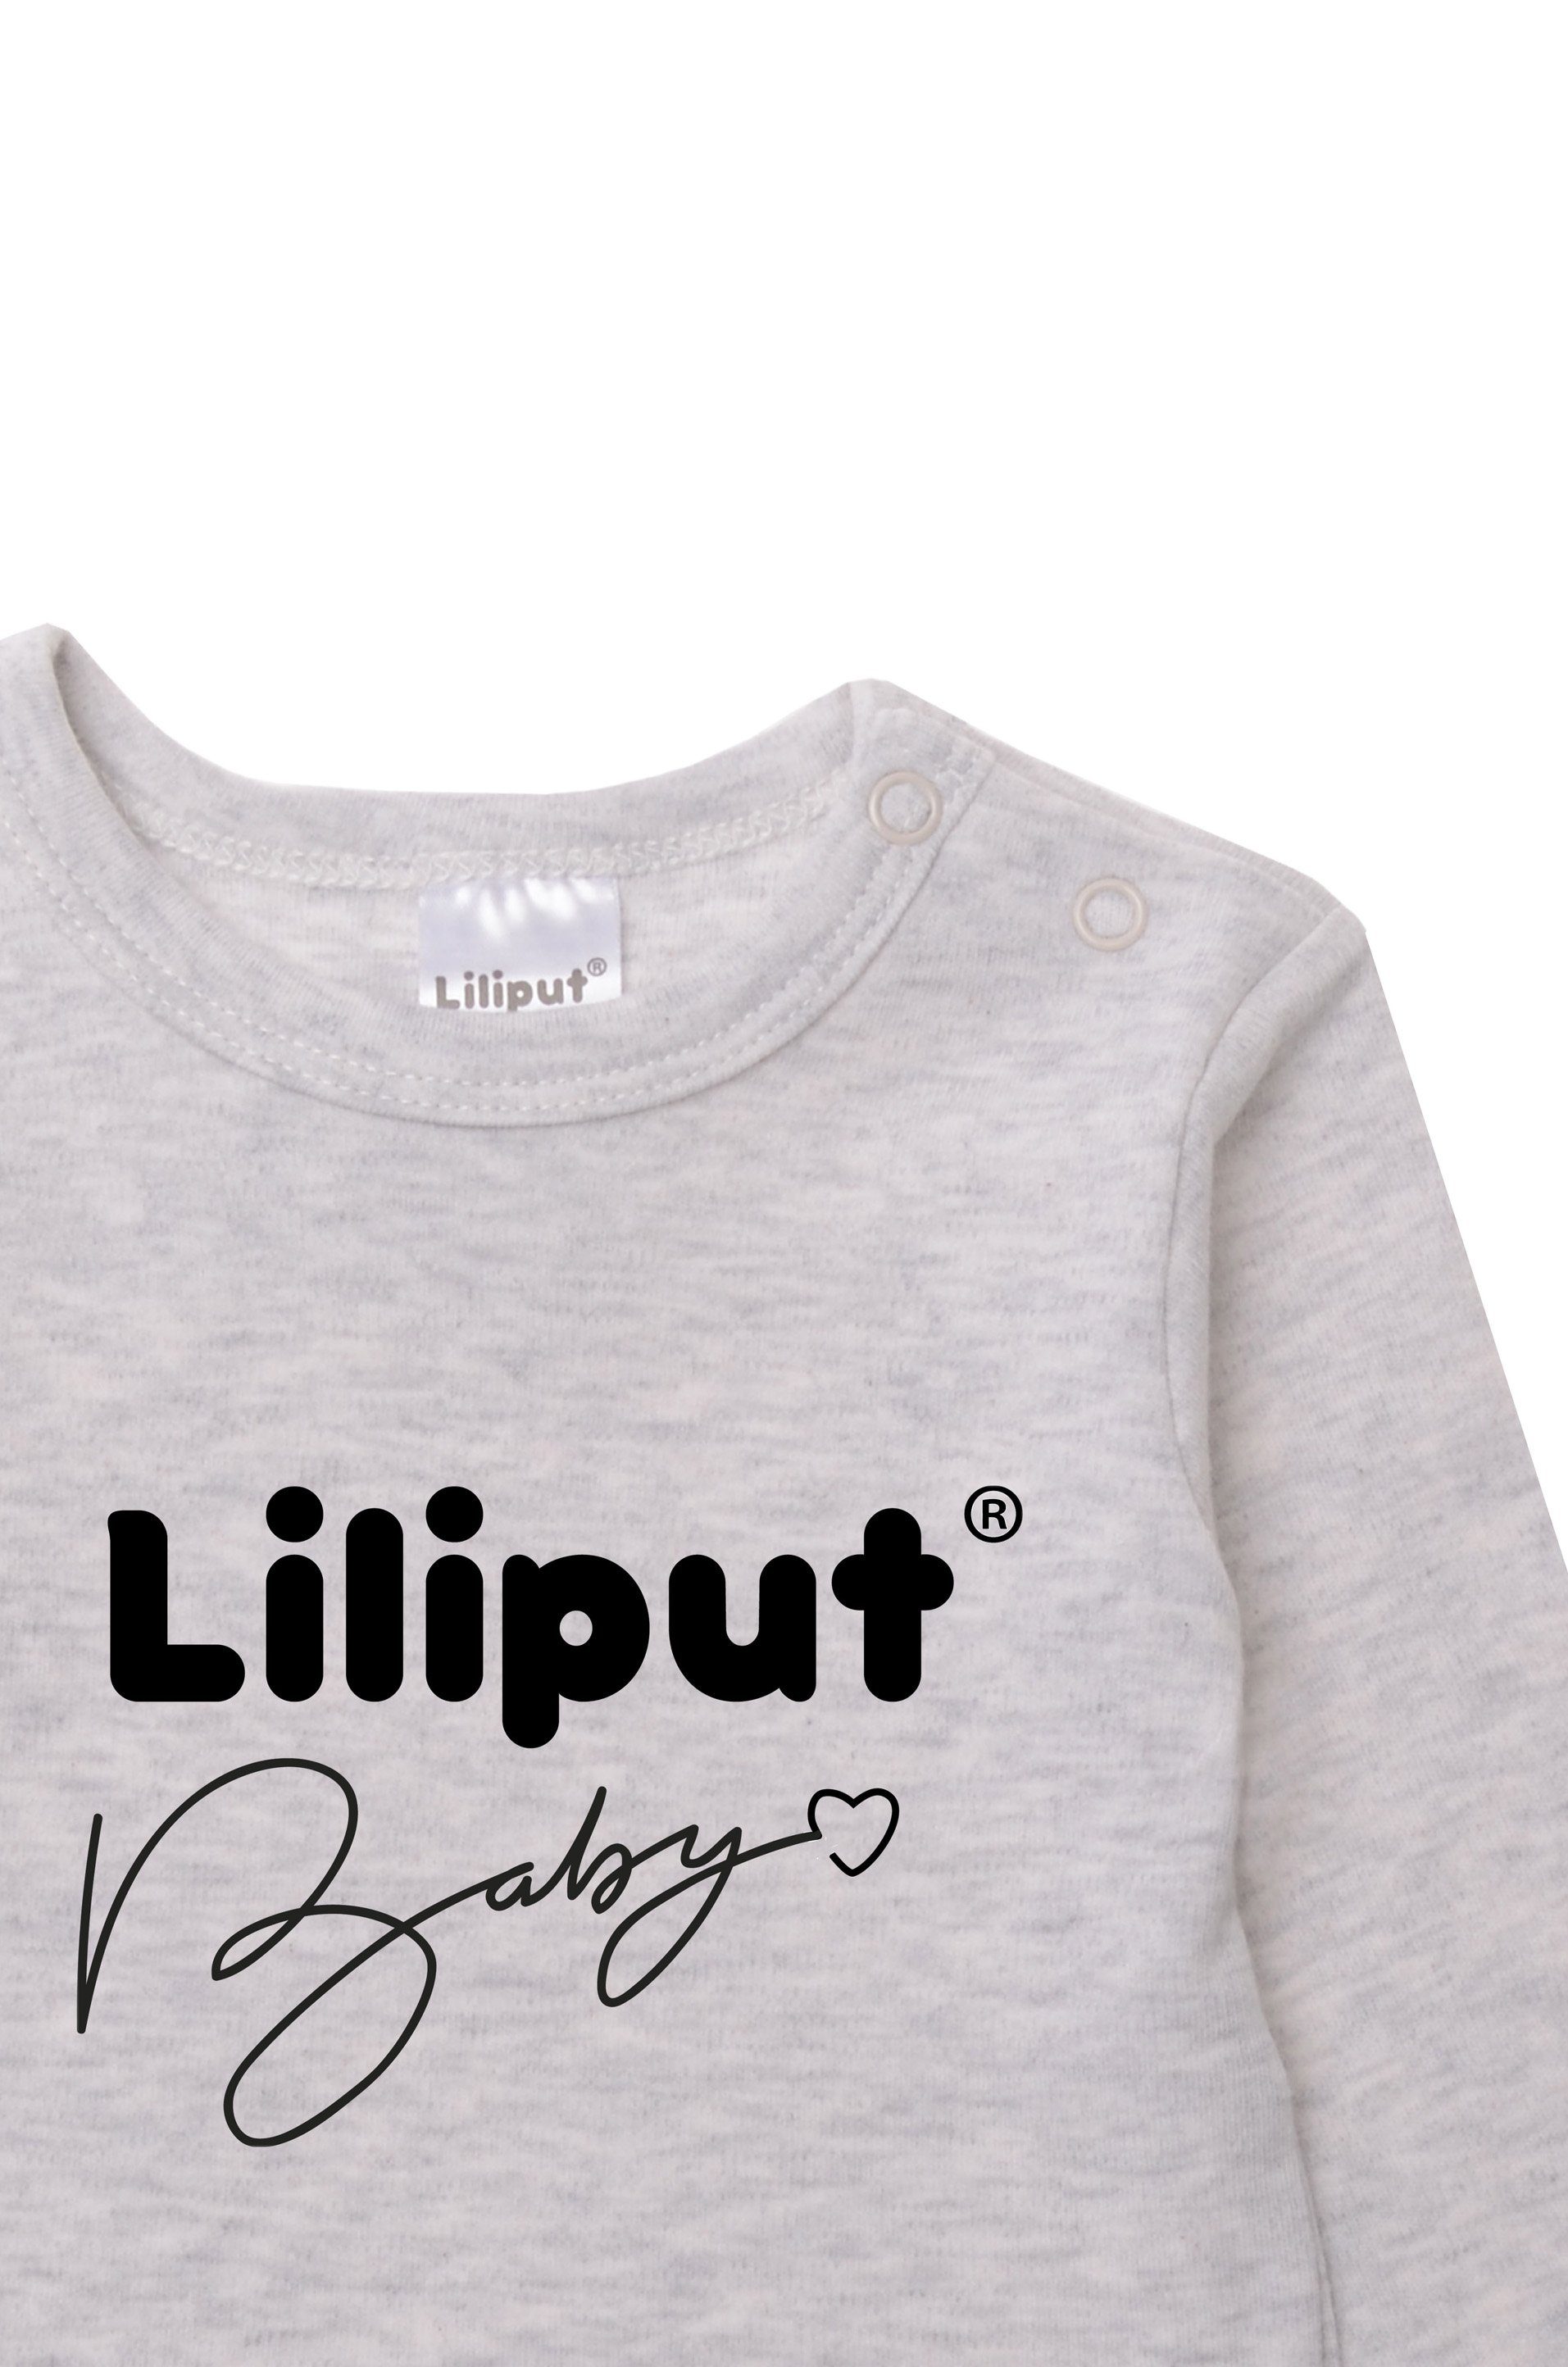 Liliput Langarmshirt mit praktischen Baby Liiput Druckknöpfen